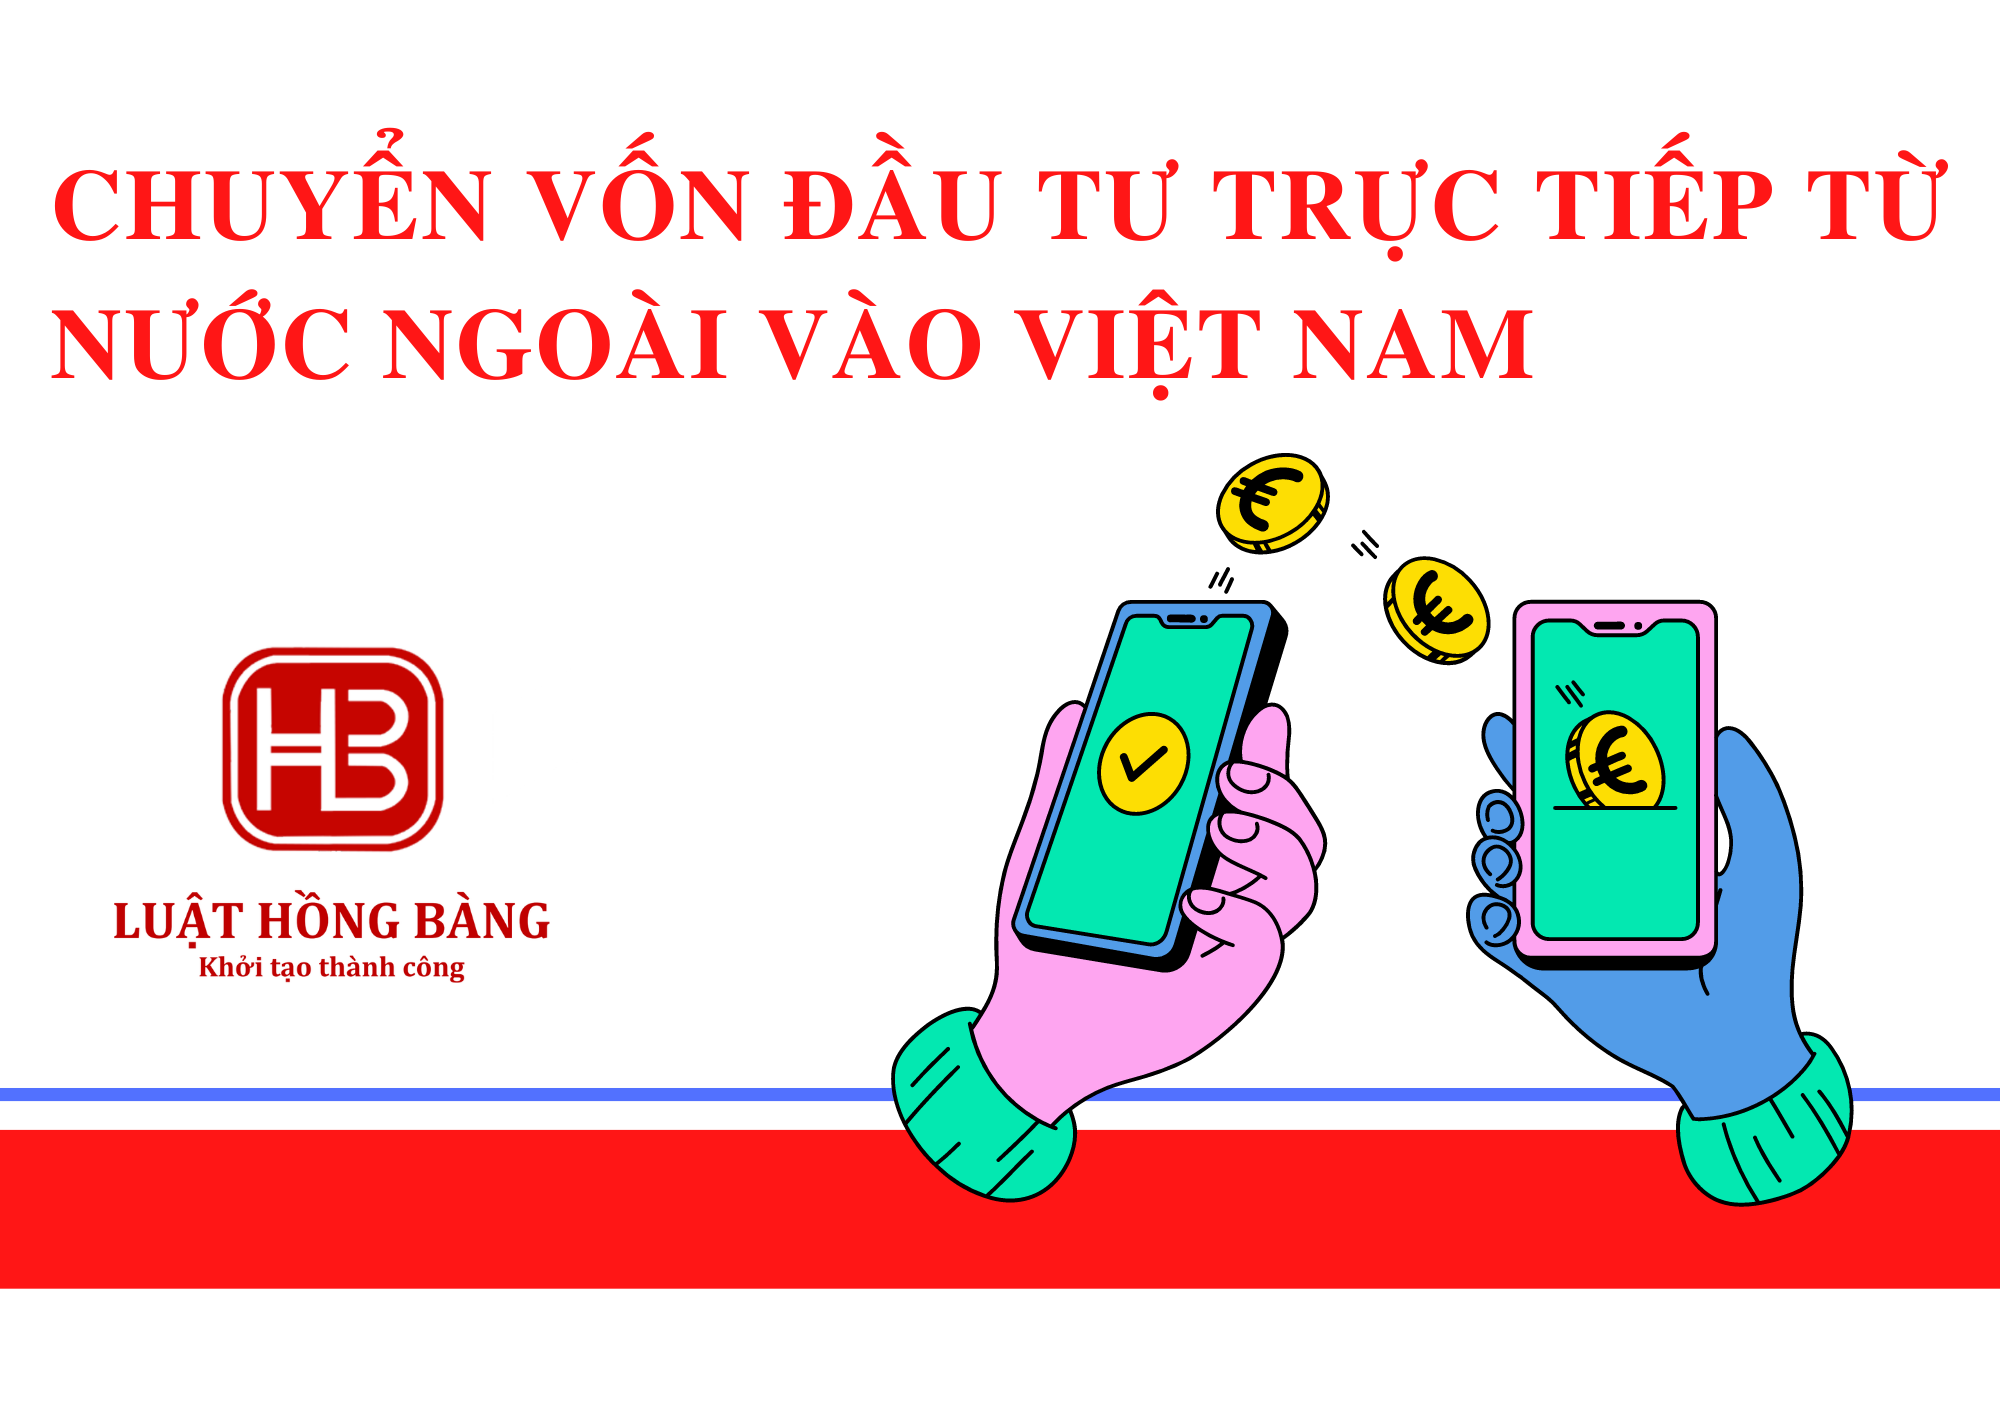 Quy định về chuyển vốn đầu tư trực tiếp từ nước ngoài vào Việt Nam